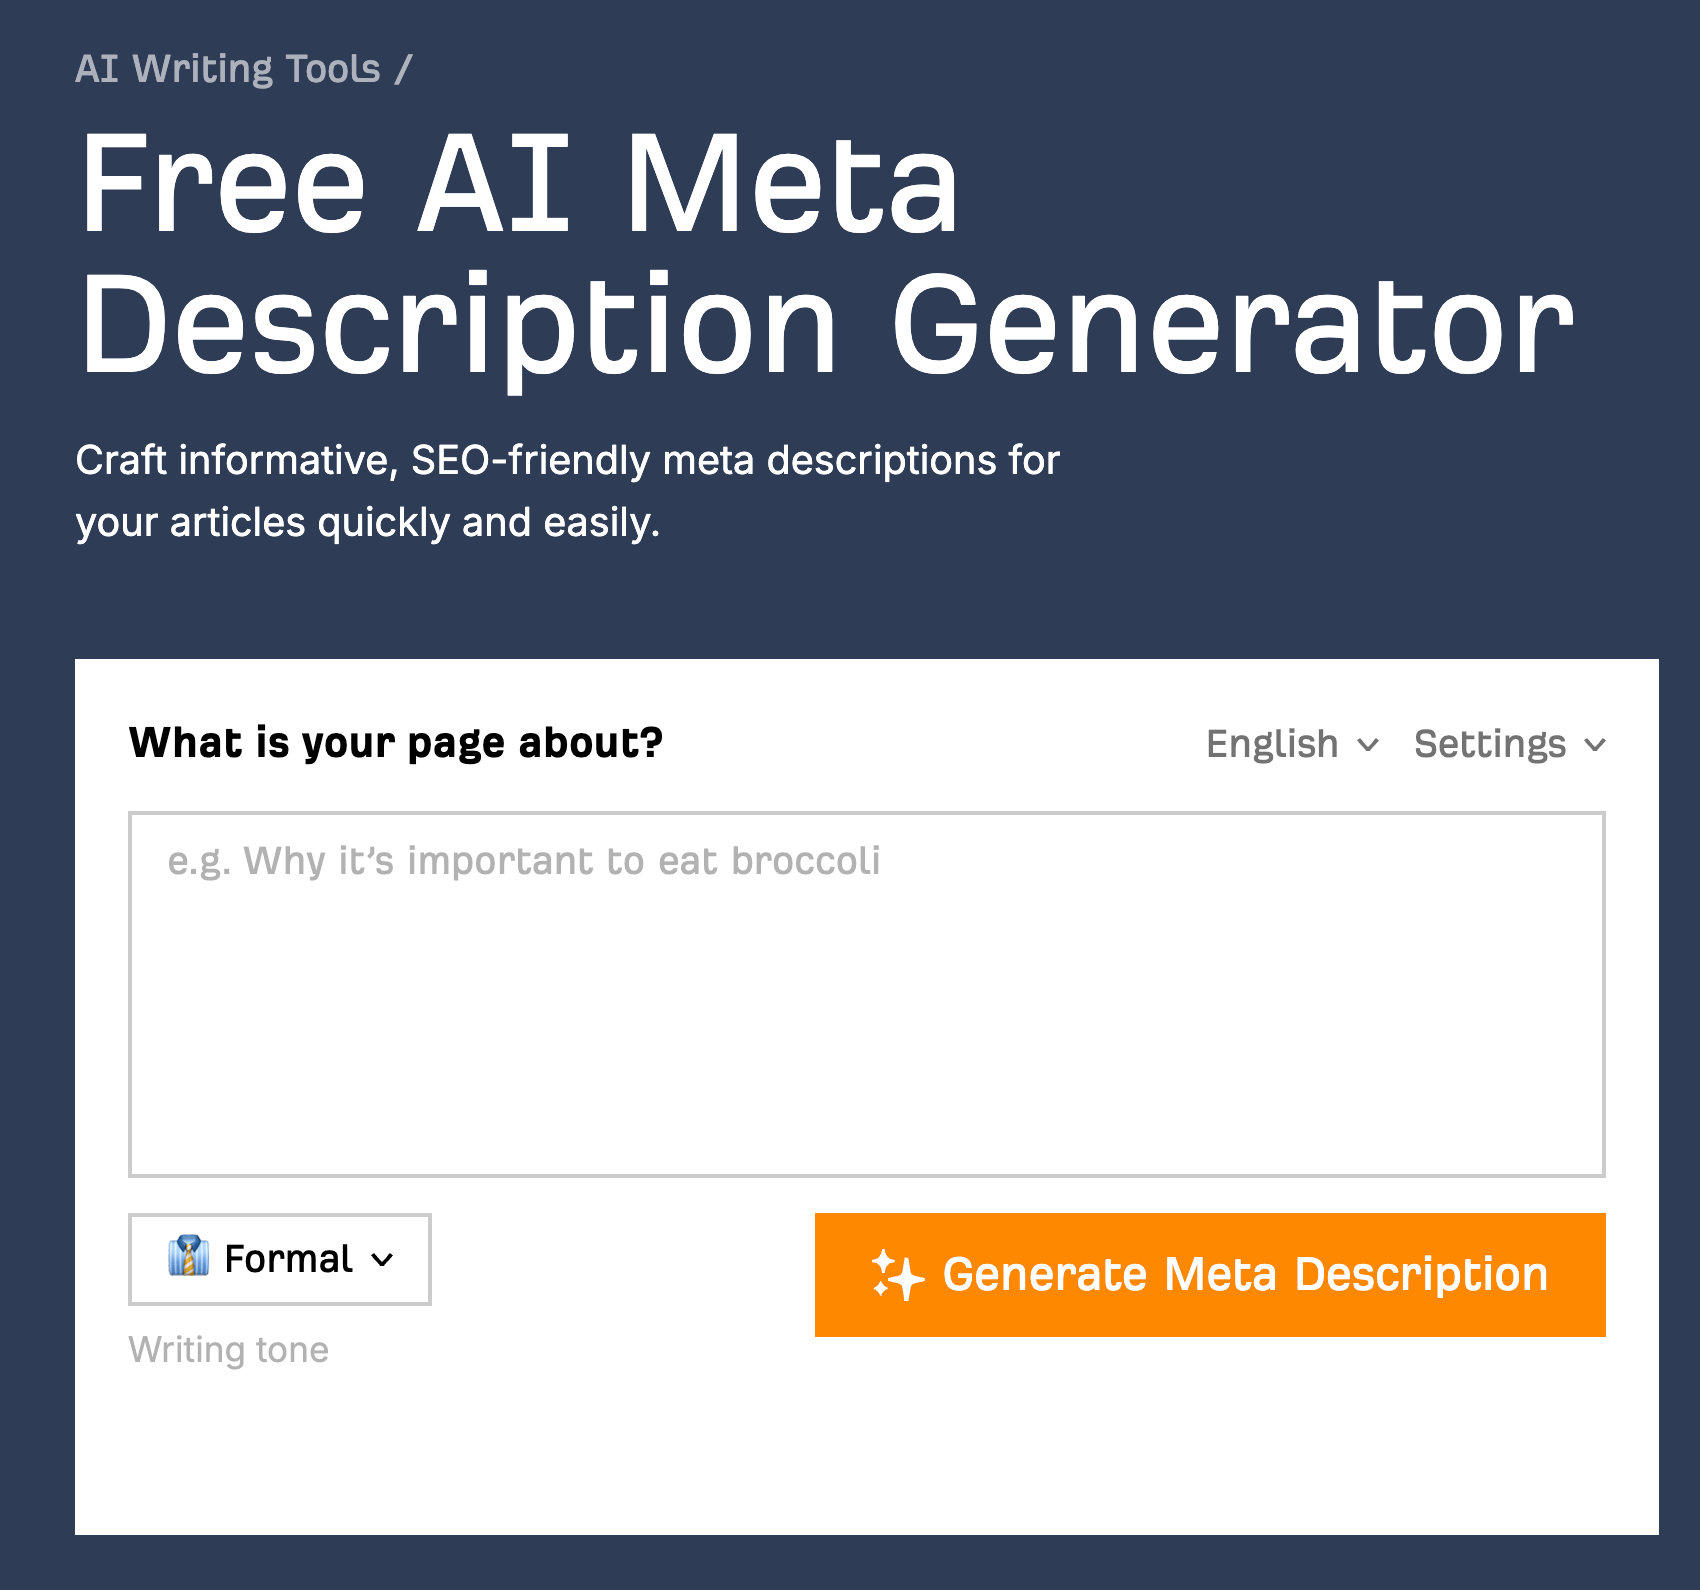 Ahrefs' free AI Meta Description Generator